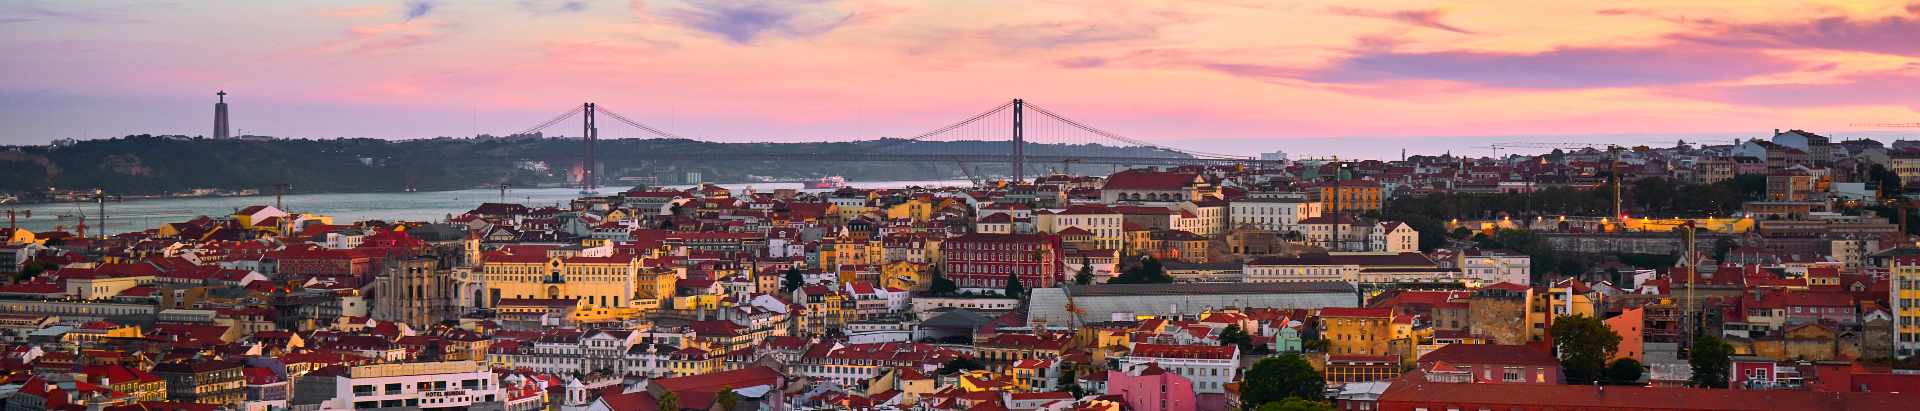 Lisbon_1400x300